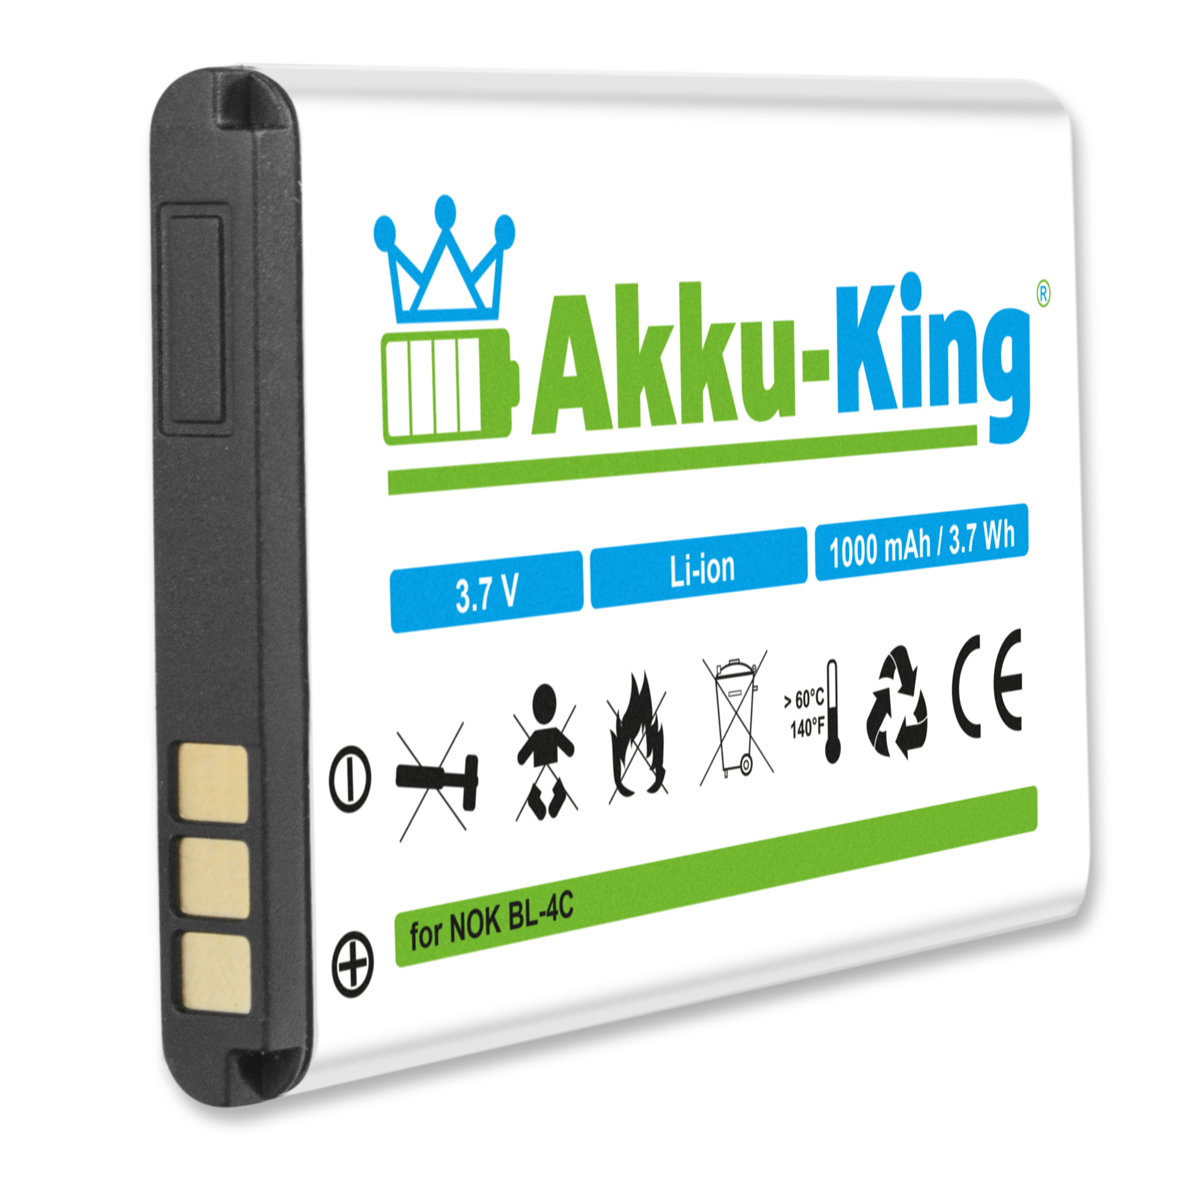 kompatibel Doro 1000mAh Handy-Akku, 3.7 AKKU-KING XYP1110007704 Volt, Li-Ion Akku mit